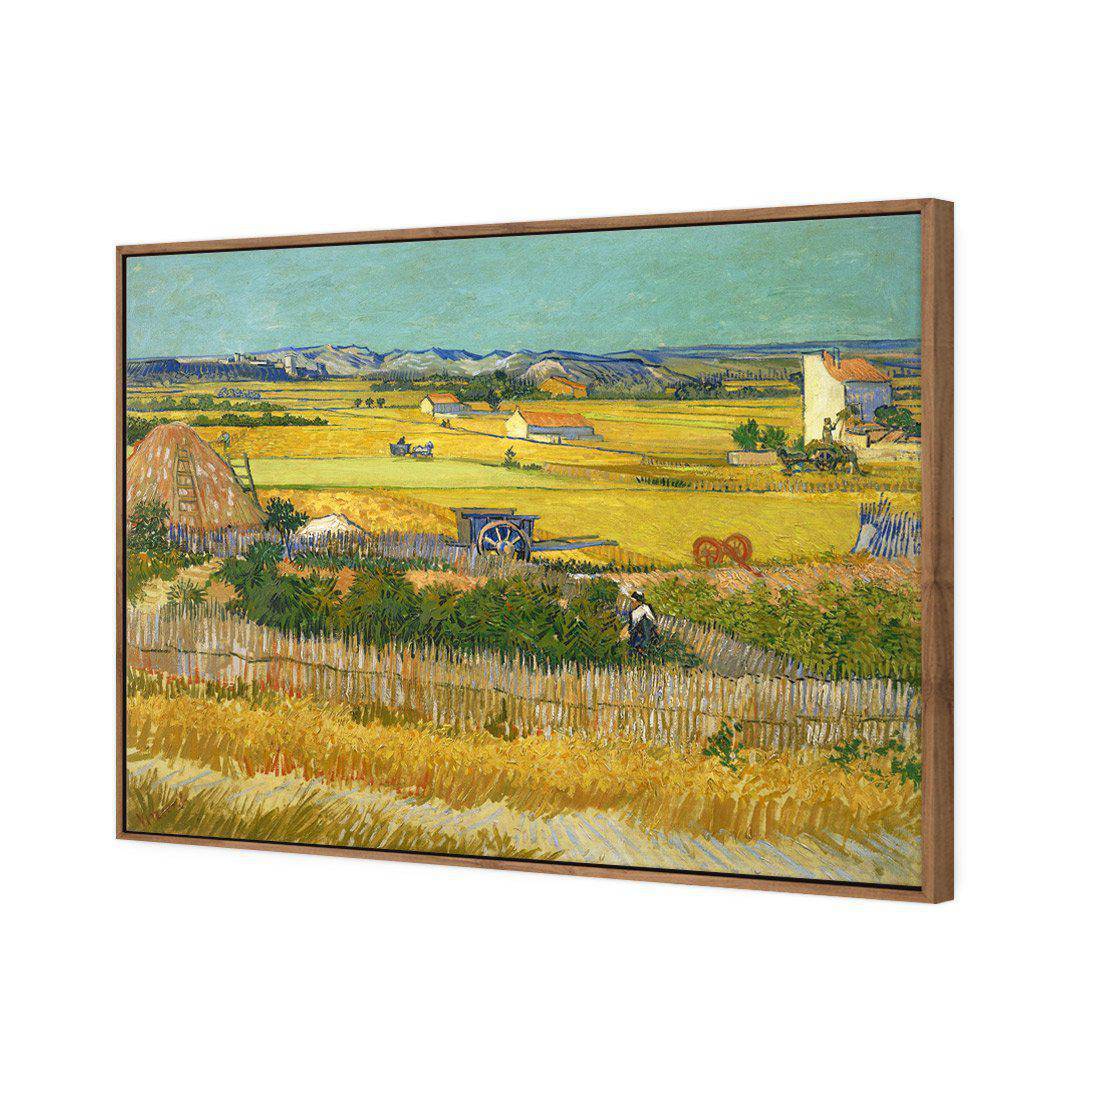 Harvest - Van Gogh Canvas Art-Canvas-Wall Art Designs-45x30cm-Canvas - Natural Frame-Wall Art Designs